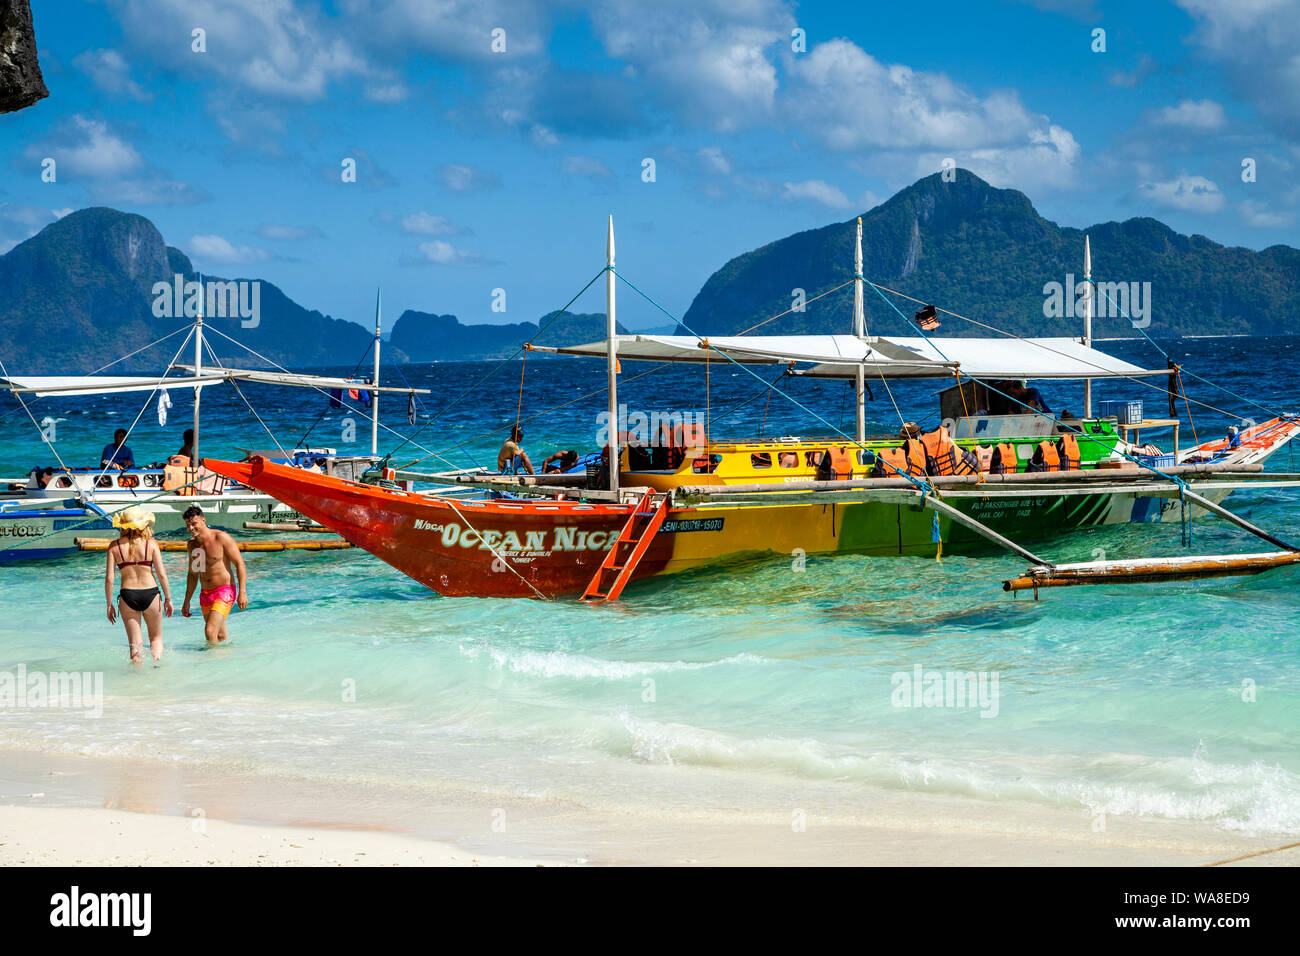 Traditional Wooden Banca Boats At Entalula Beach, El Nido, Palawan, The Philippines Stock Photo